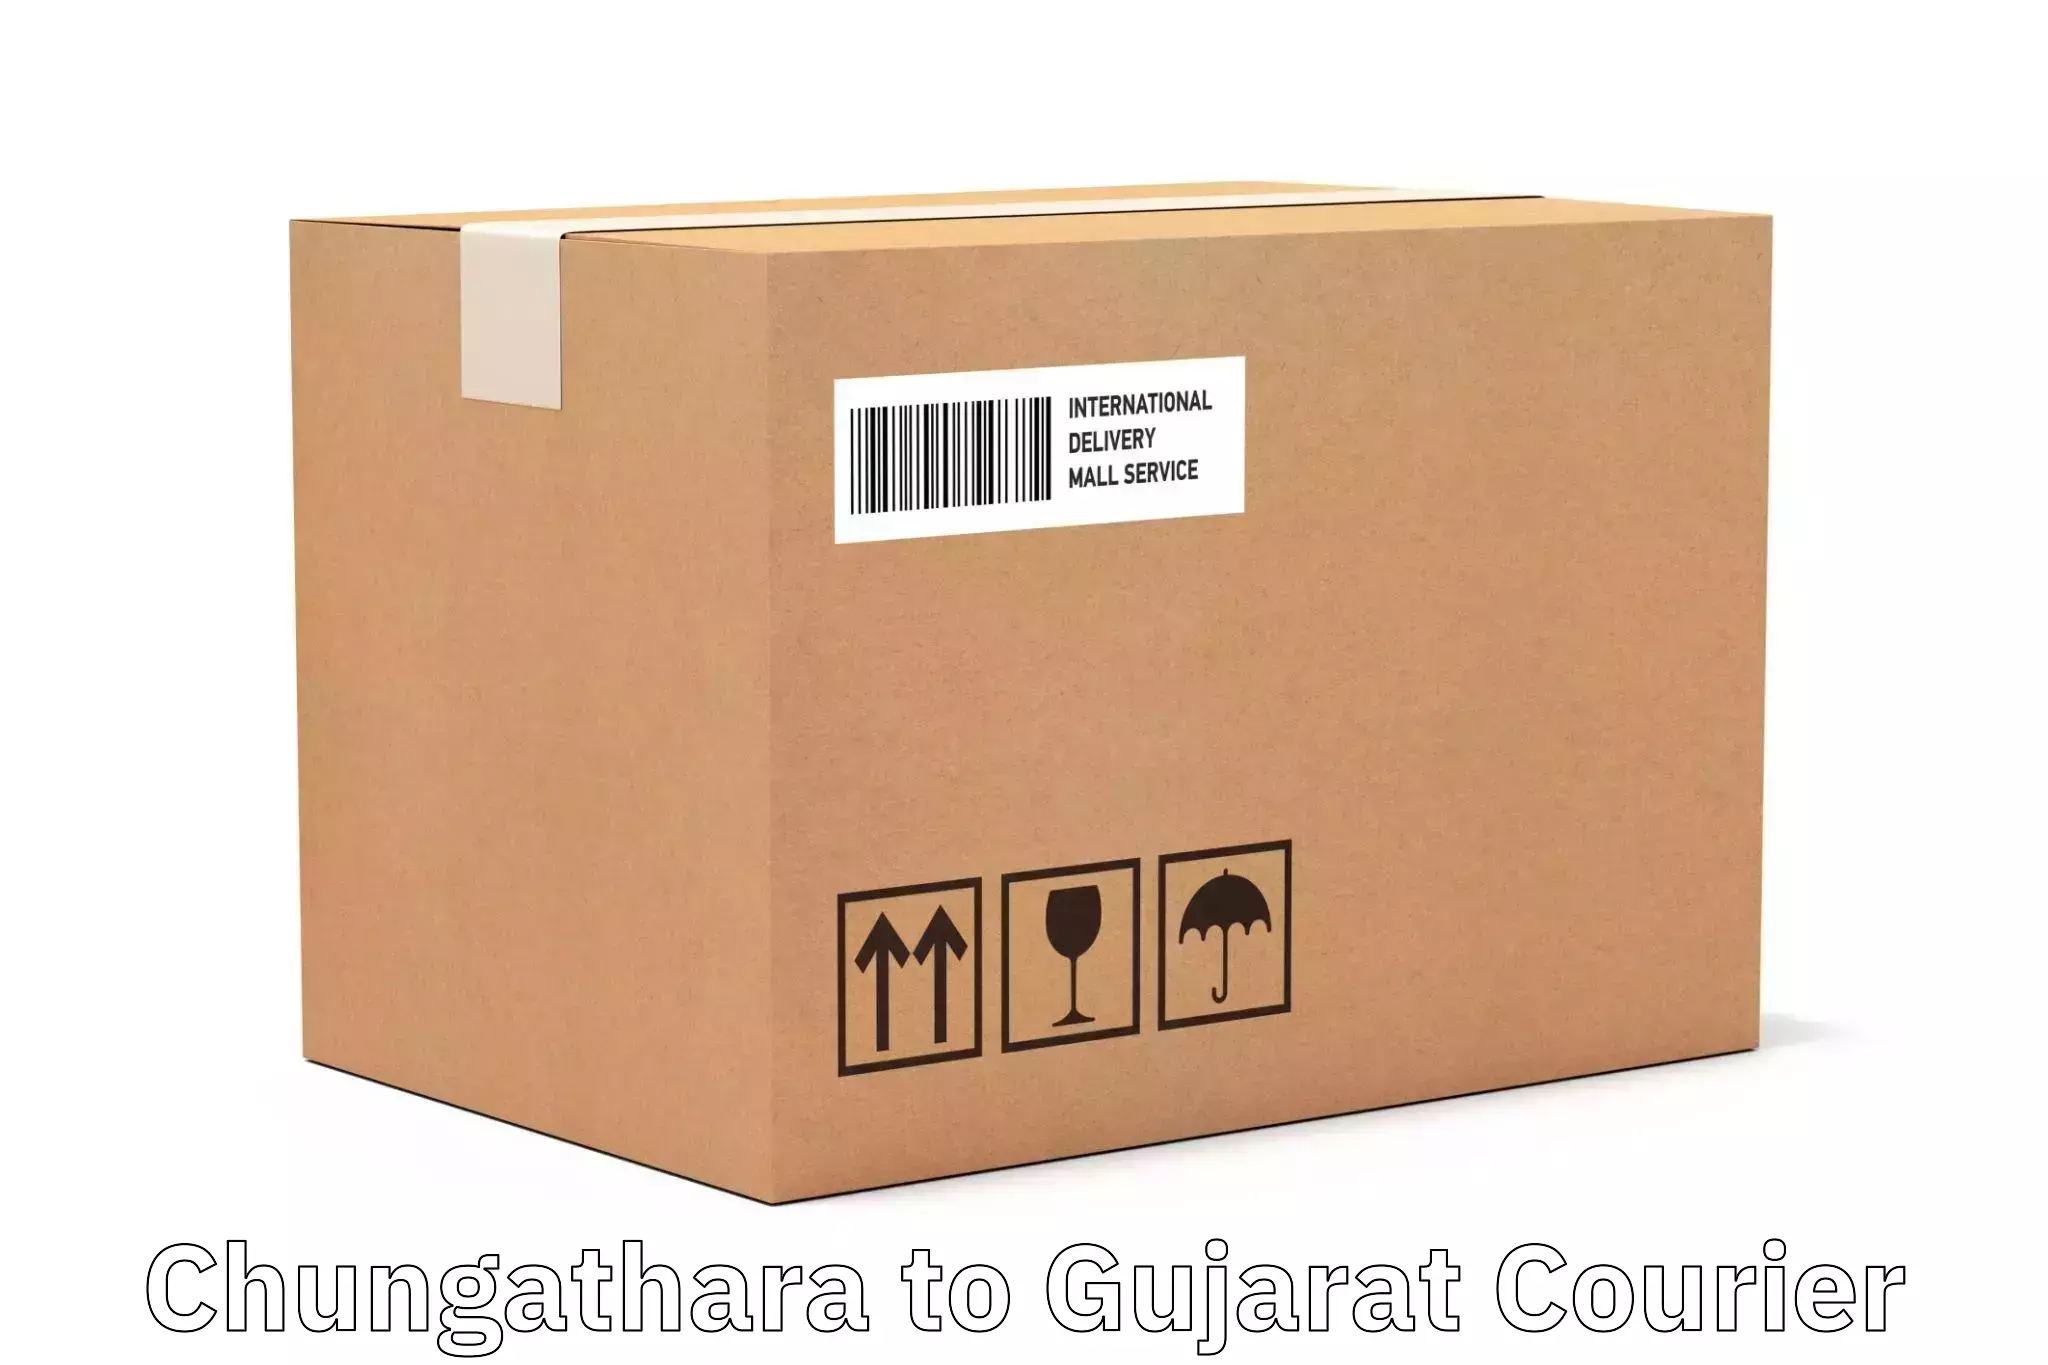 Enhanced tracking features Chungathara to Vyara